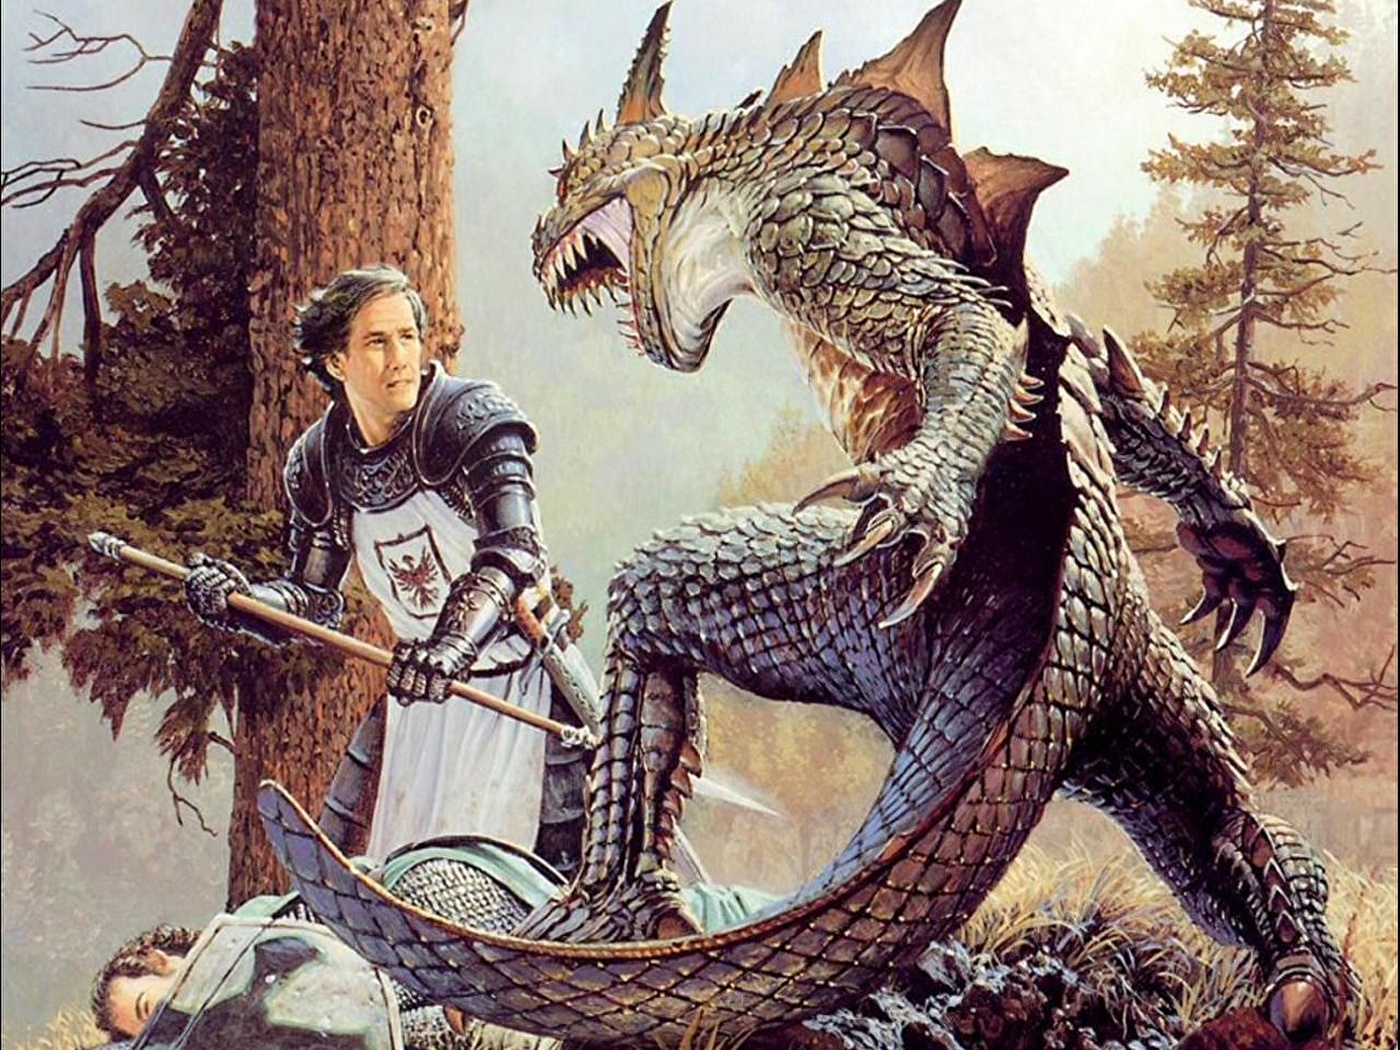 Рус рептилоид. Ланселот рыцарь против дракона. Кит Паркинсон картины. Сражение с драконом. Рыцарь сражается с драконом.